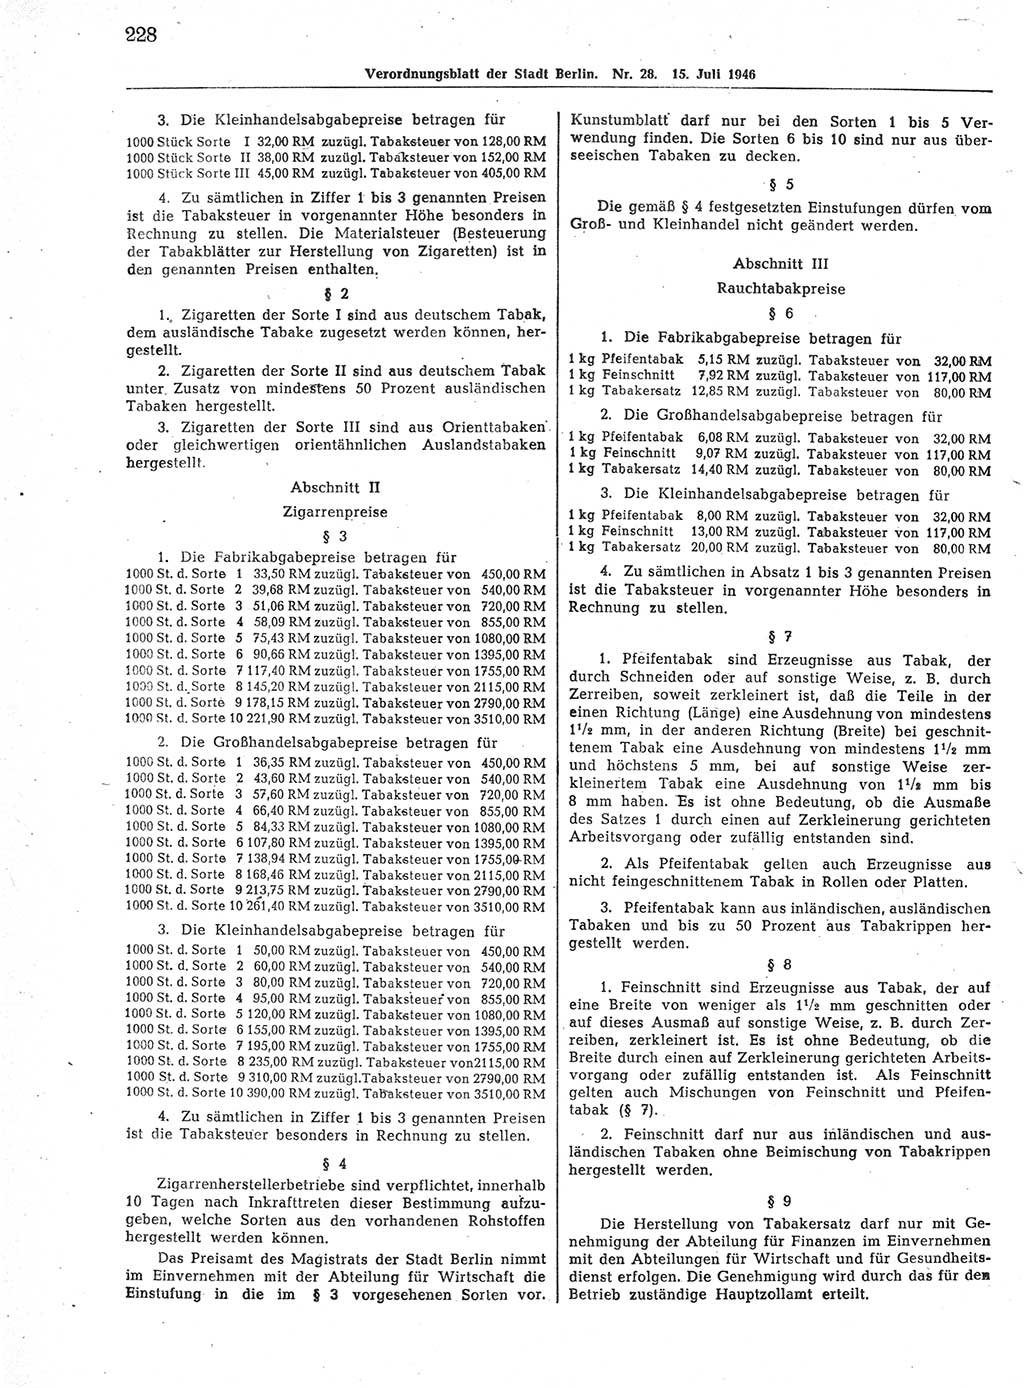 Verordnungsblatt (VOBl.) der Stadt Berlin, für Groß-Berlin 1946, Seite 228 (VOBl. Bln. 1946, S. 228)